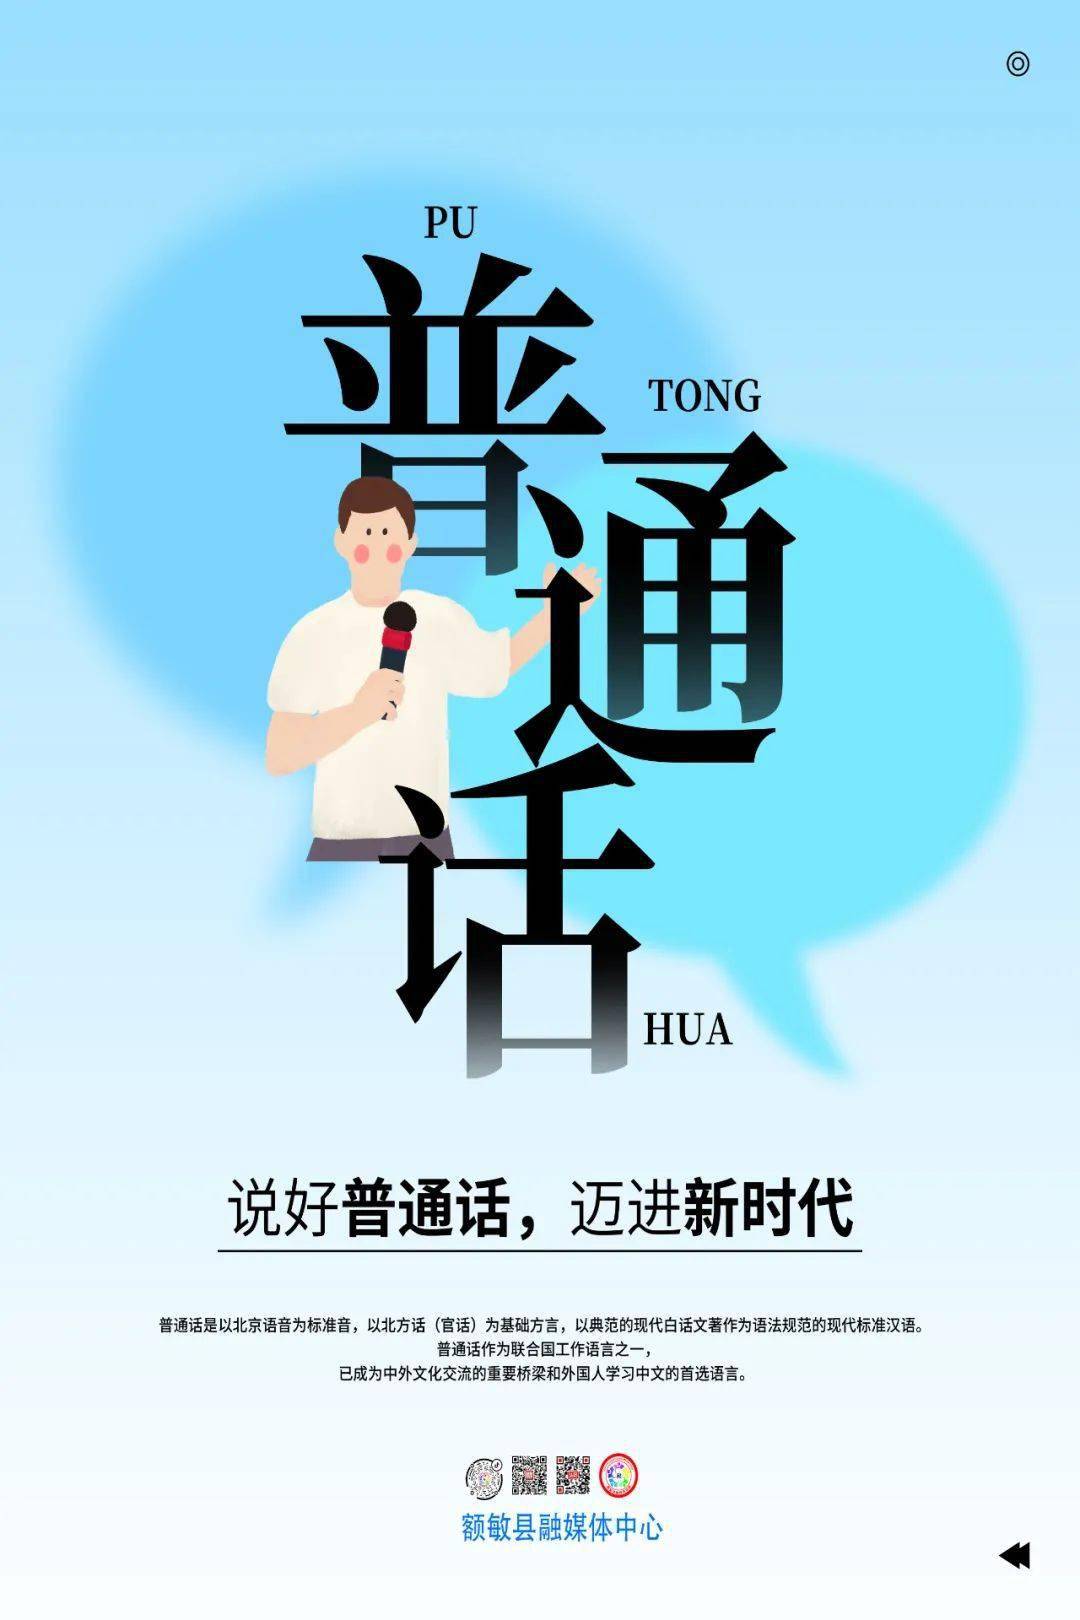 推普第24届全国推广普通话宣传周宣传海报